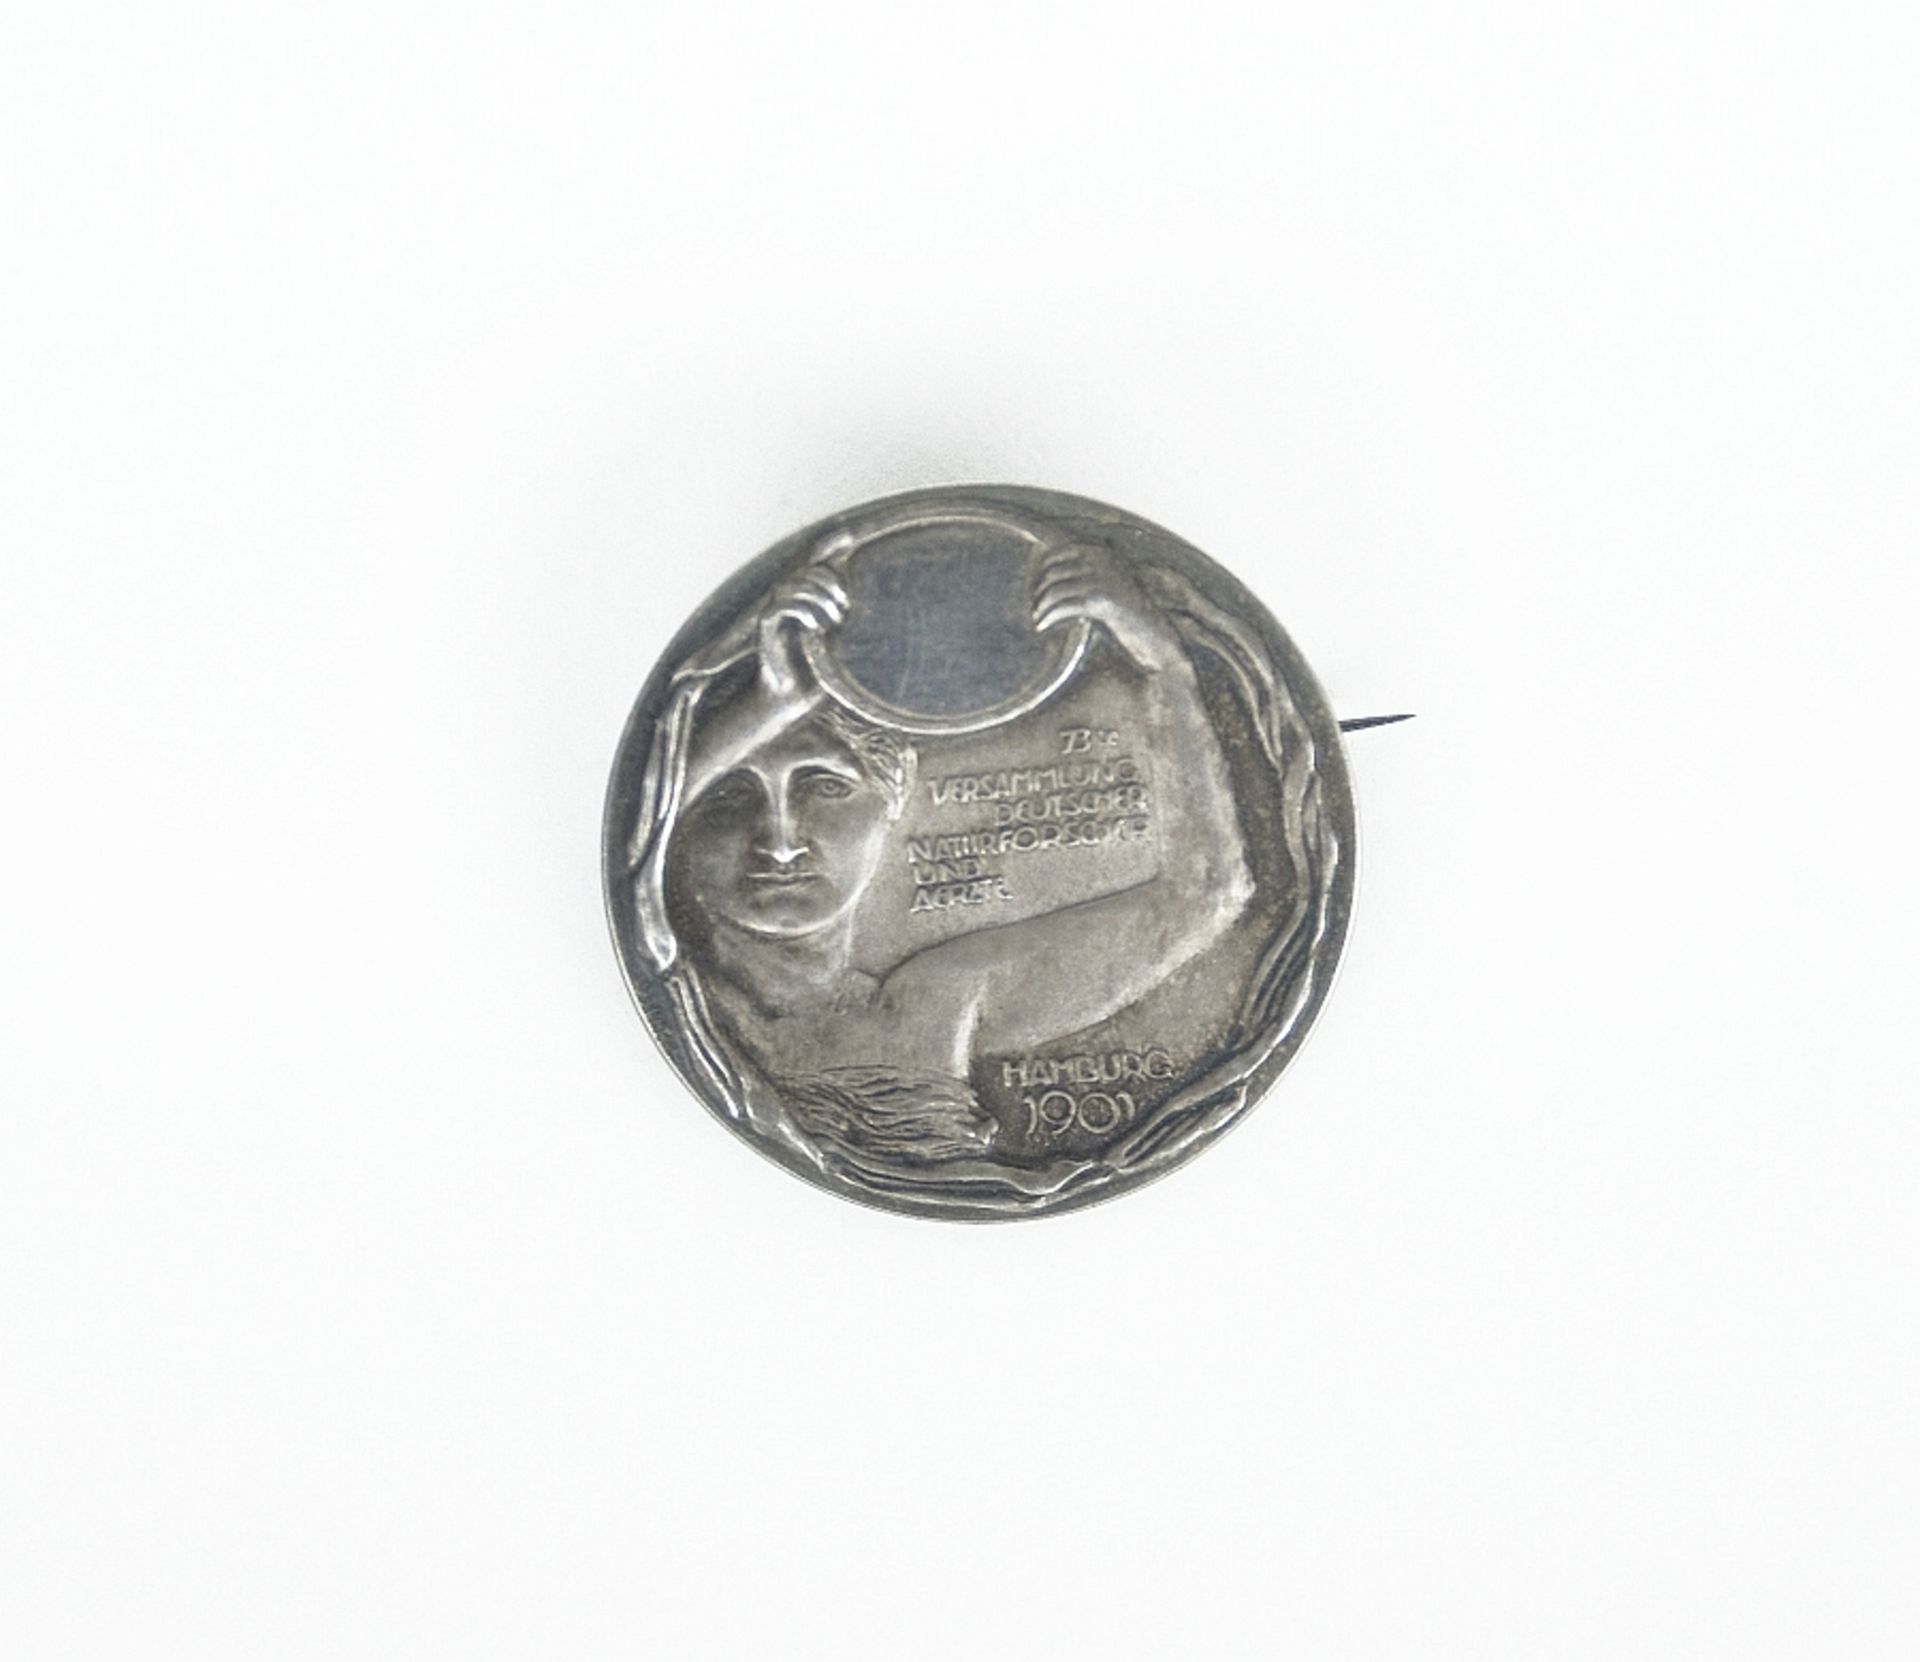 Illies, Arthur: Medaille ''73te Versammlung Deutscher Naturforscher und Aerzte Hamburg 1901''